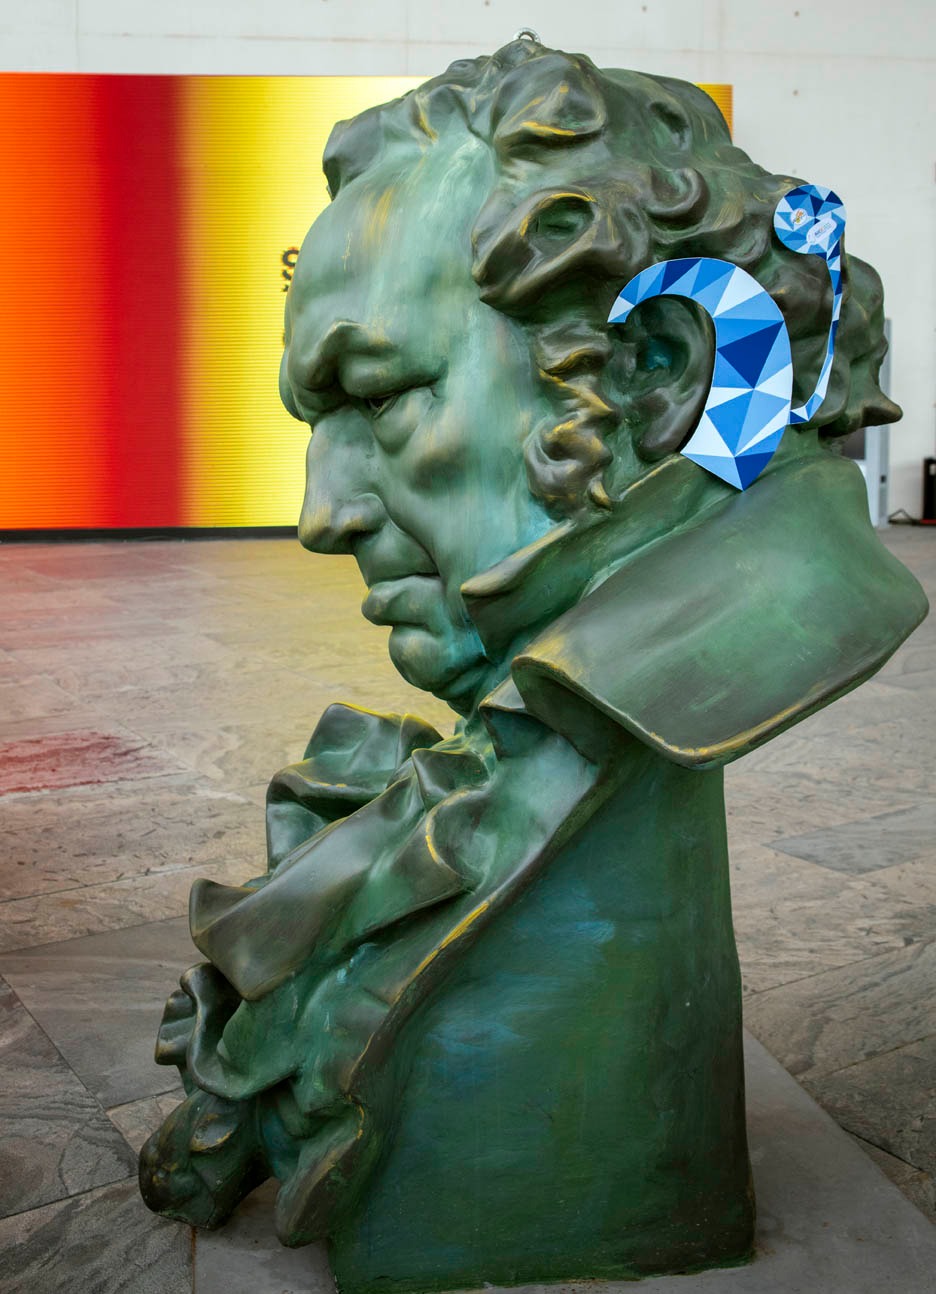 Imagen de la escultura de los Premios Goya, en Sevilla, con Implante Coclear